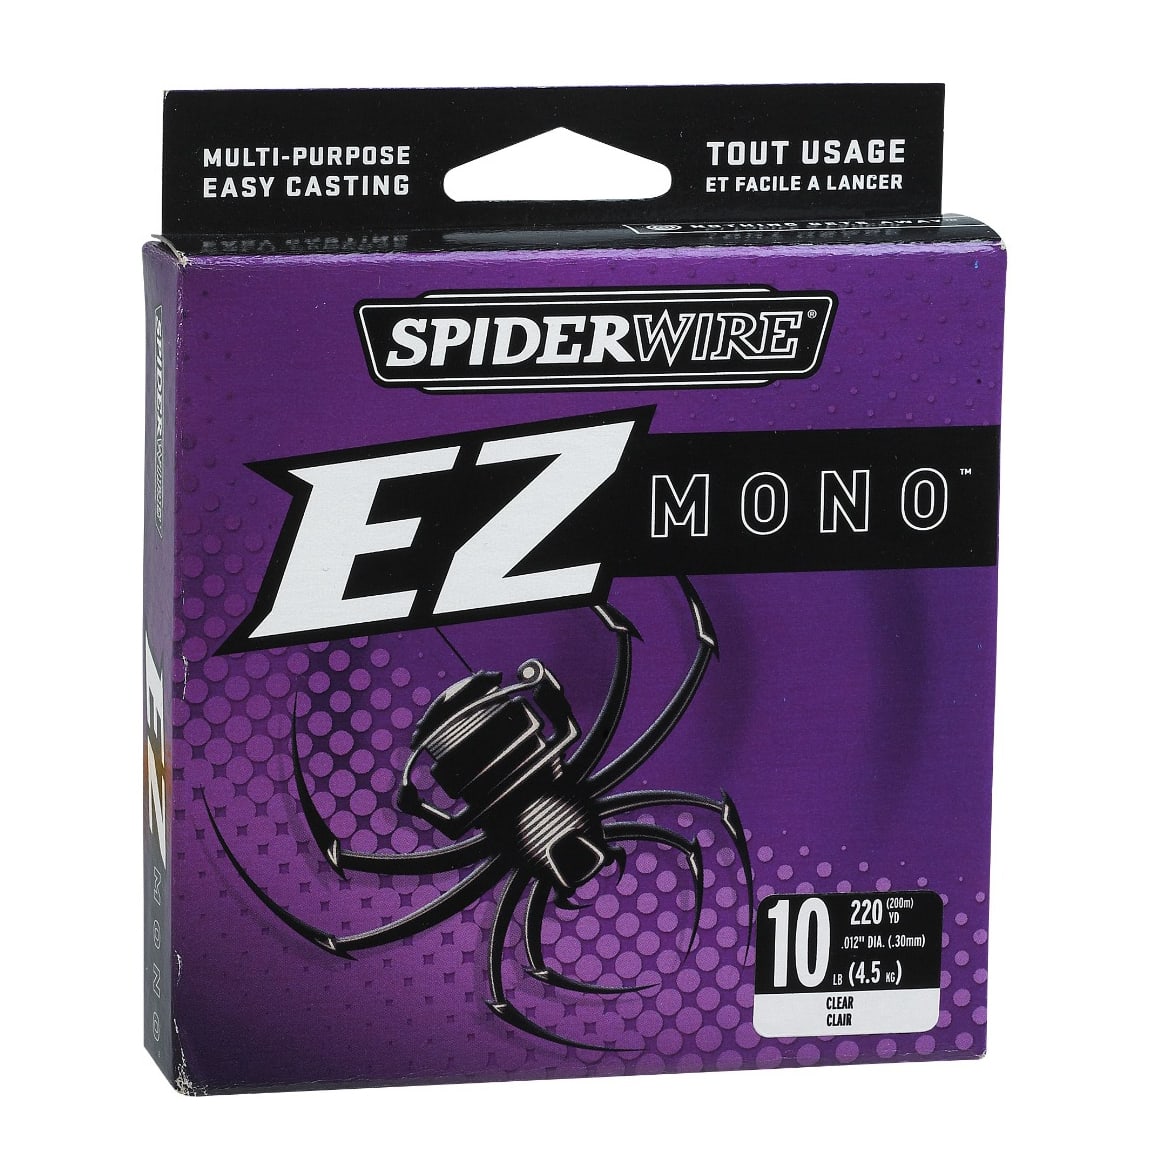 Spiderwire Super Mono EZ Fishing Line